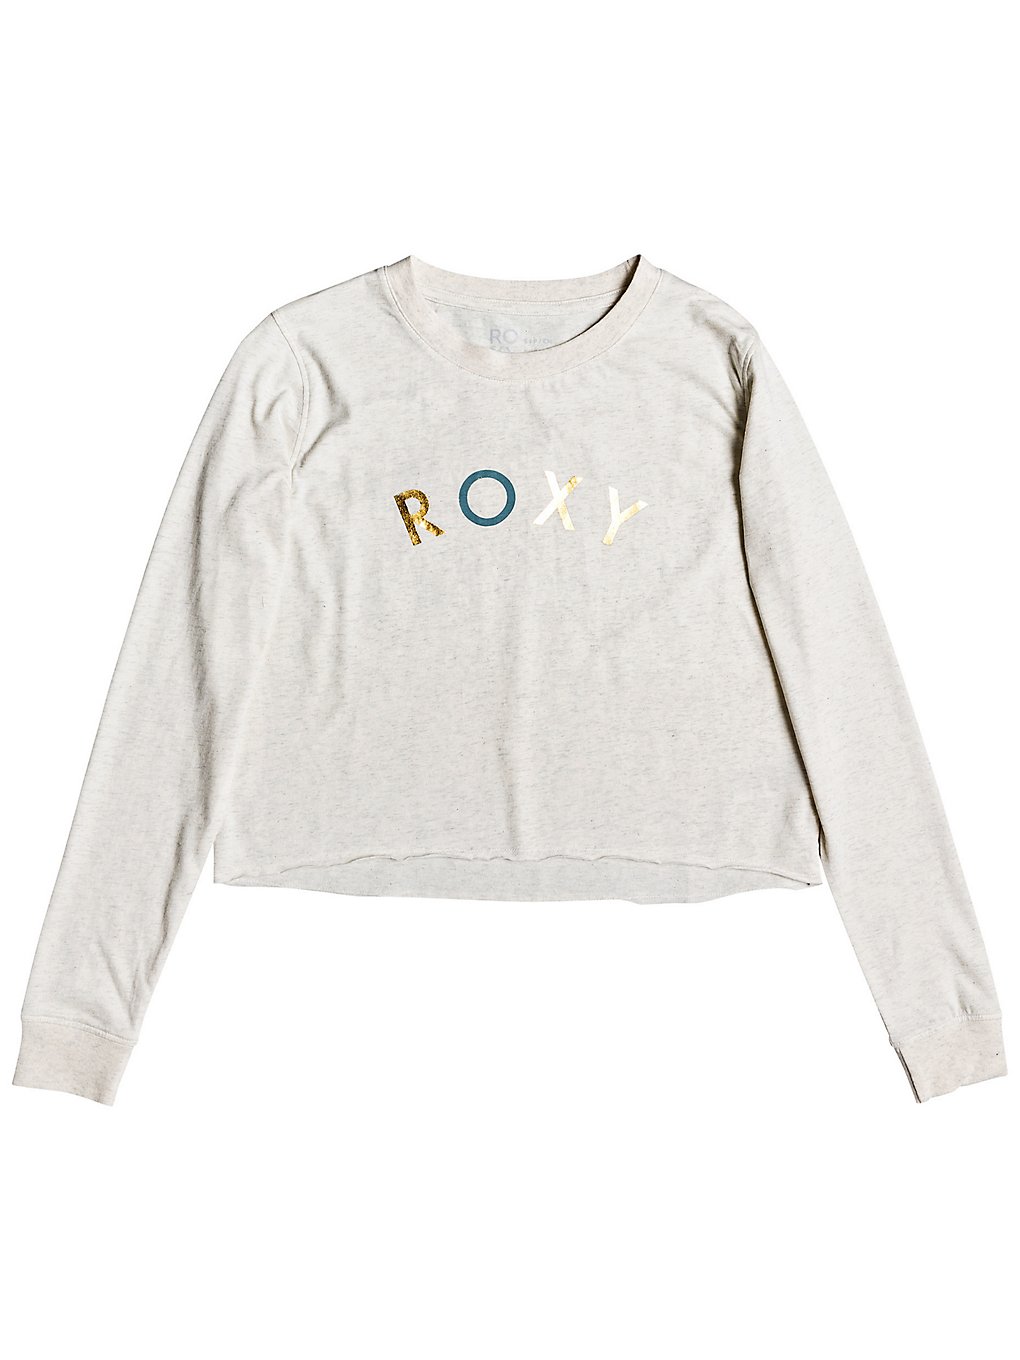 Roxy all the stars long sleeve t-shirt valkoinen, roxy